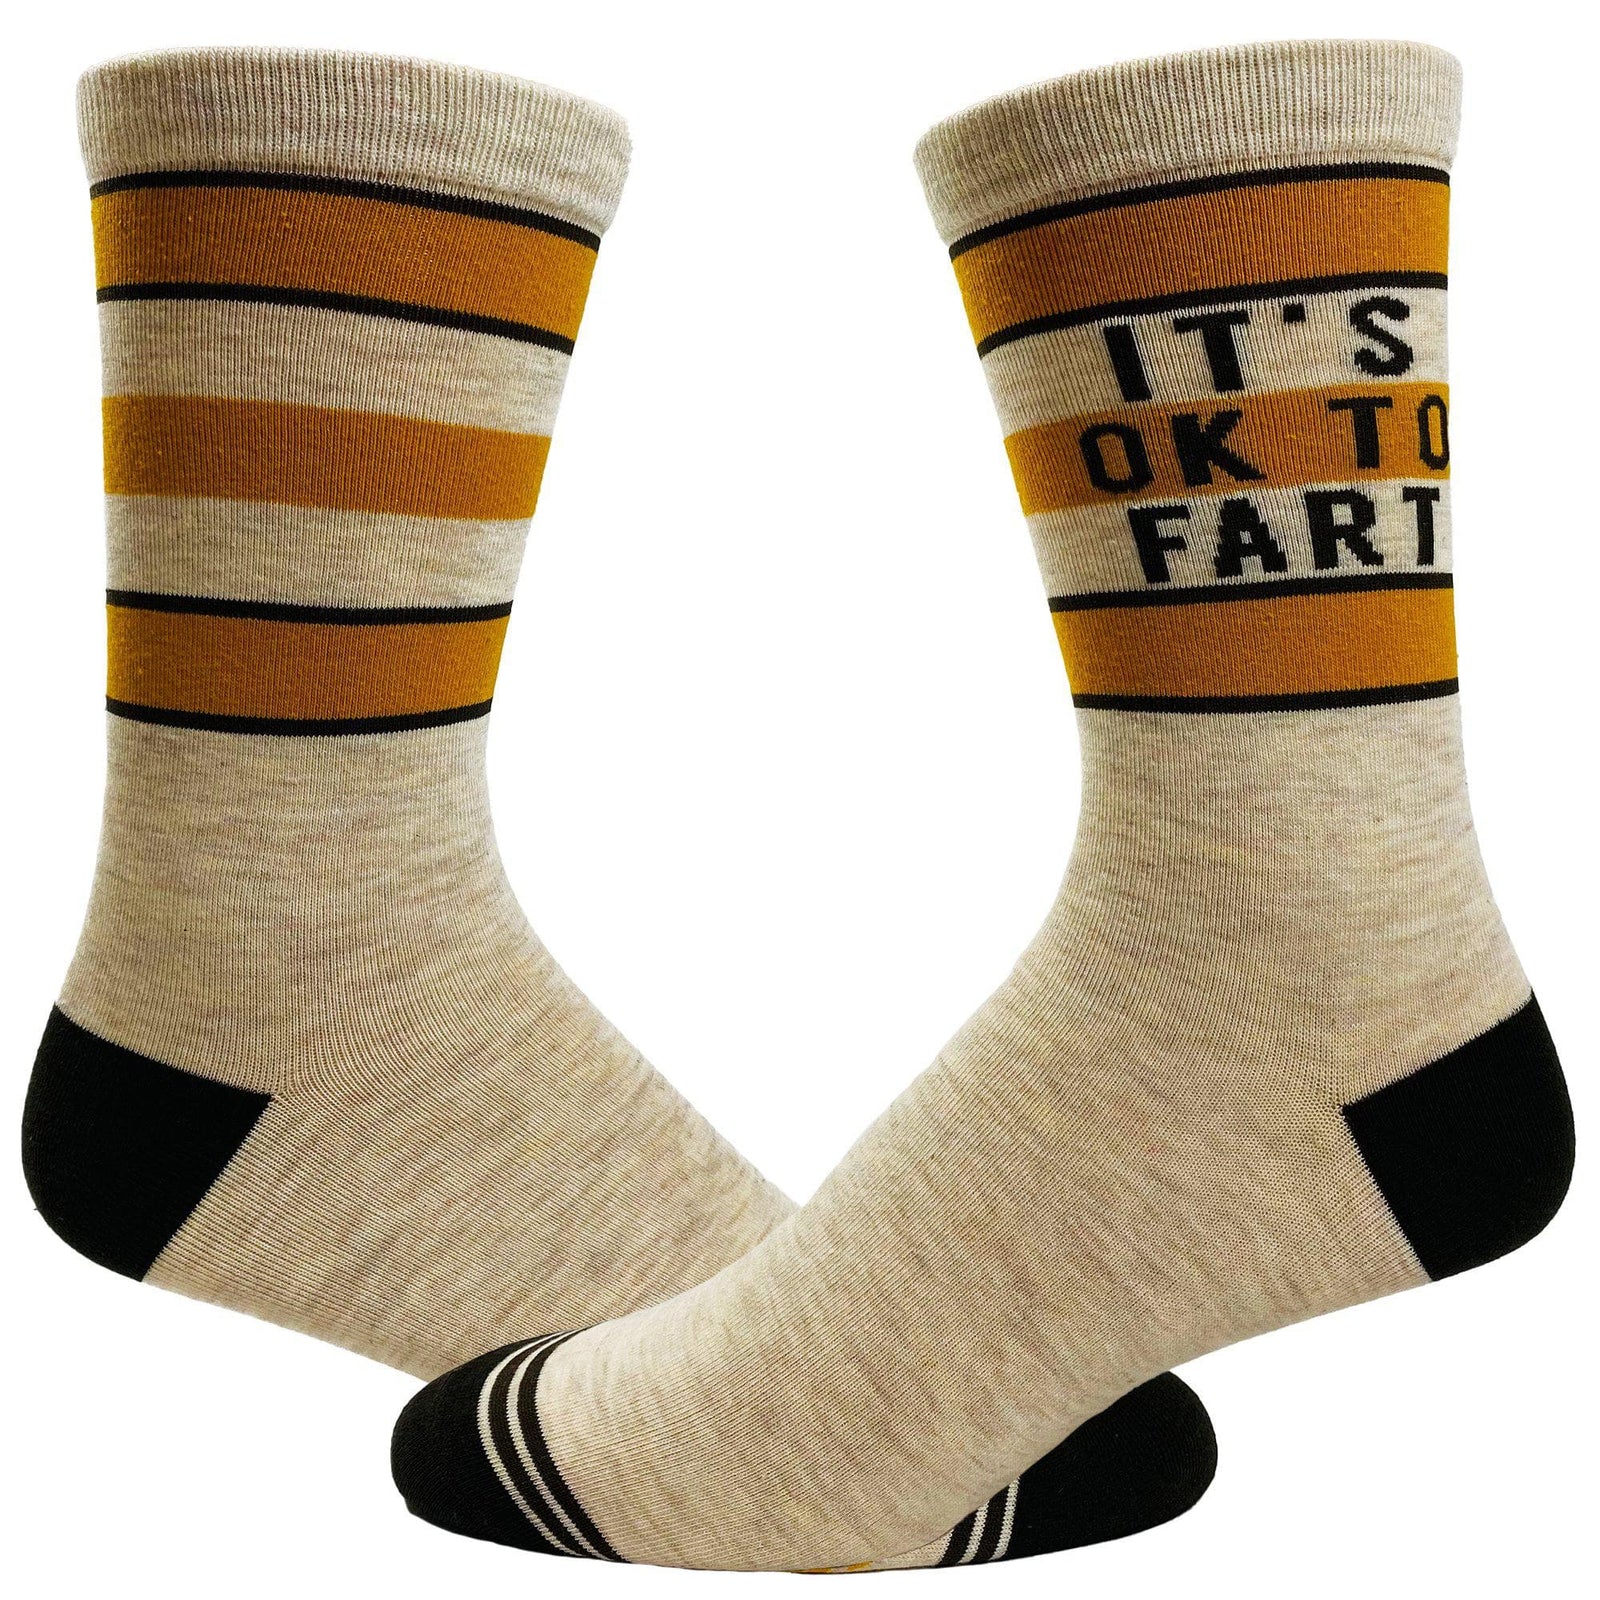 Funny Socks, Crazy Mens Socks